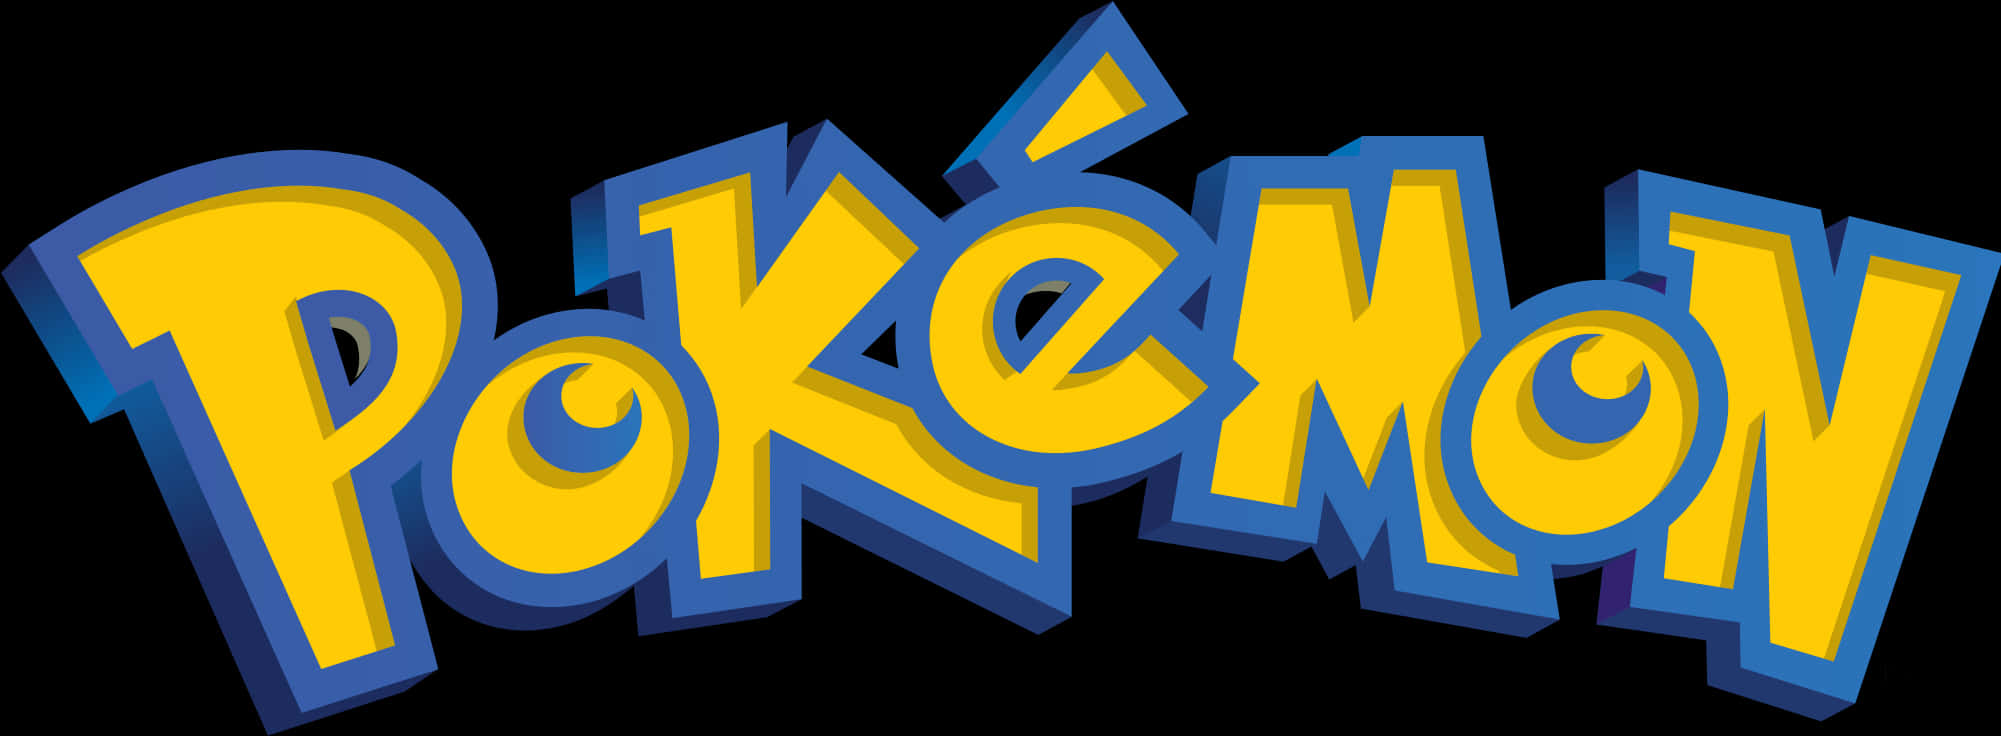 Open - Pokemon Logo Png